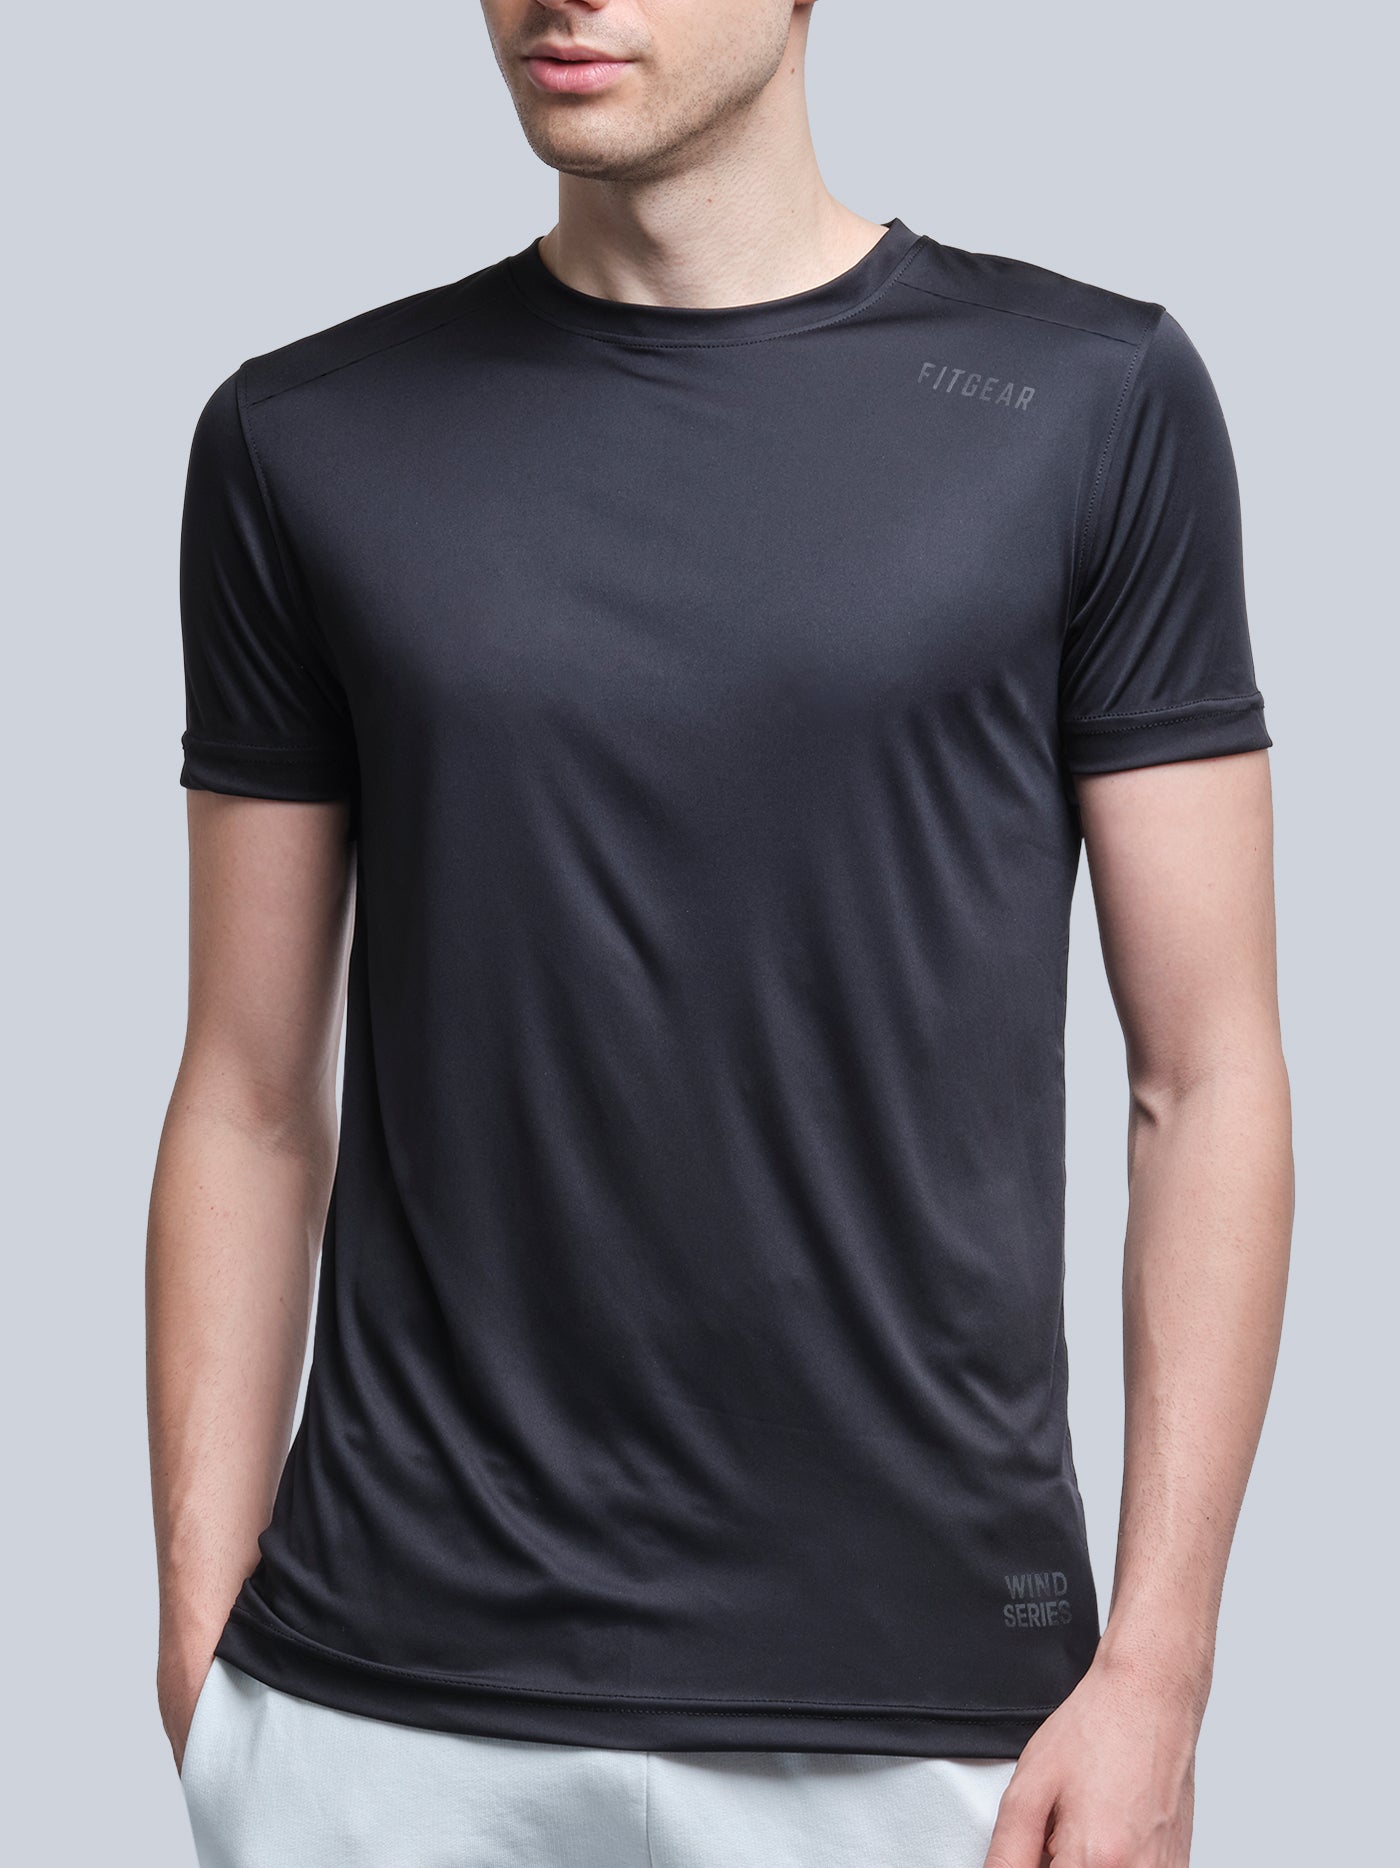 Wind T-Shirt (Men) — Fan Edition